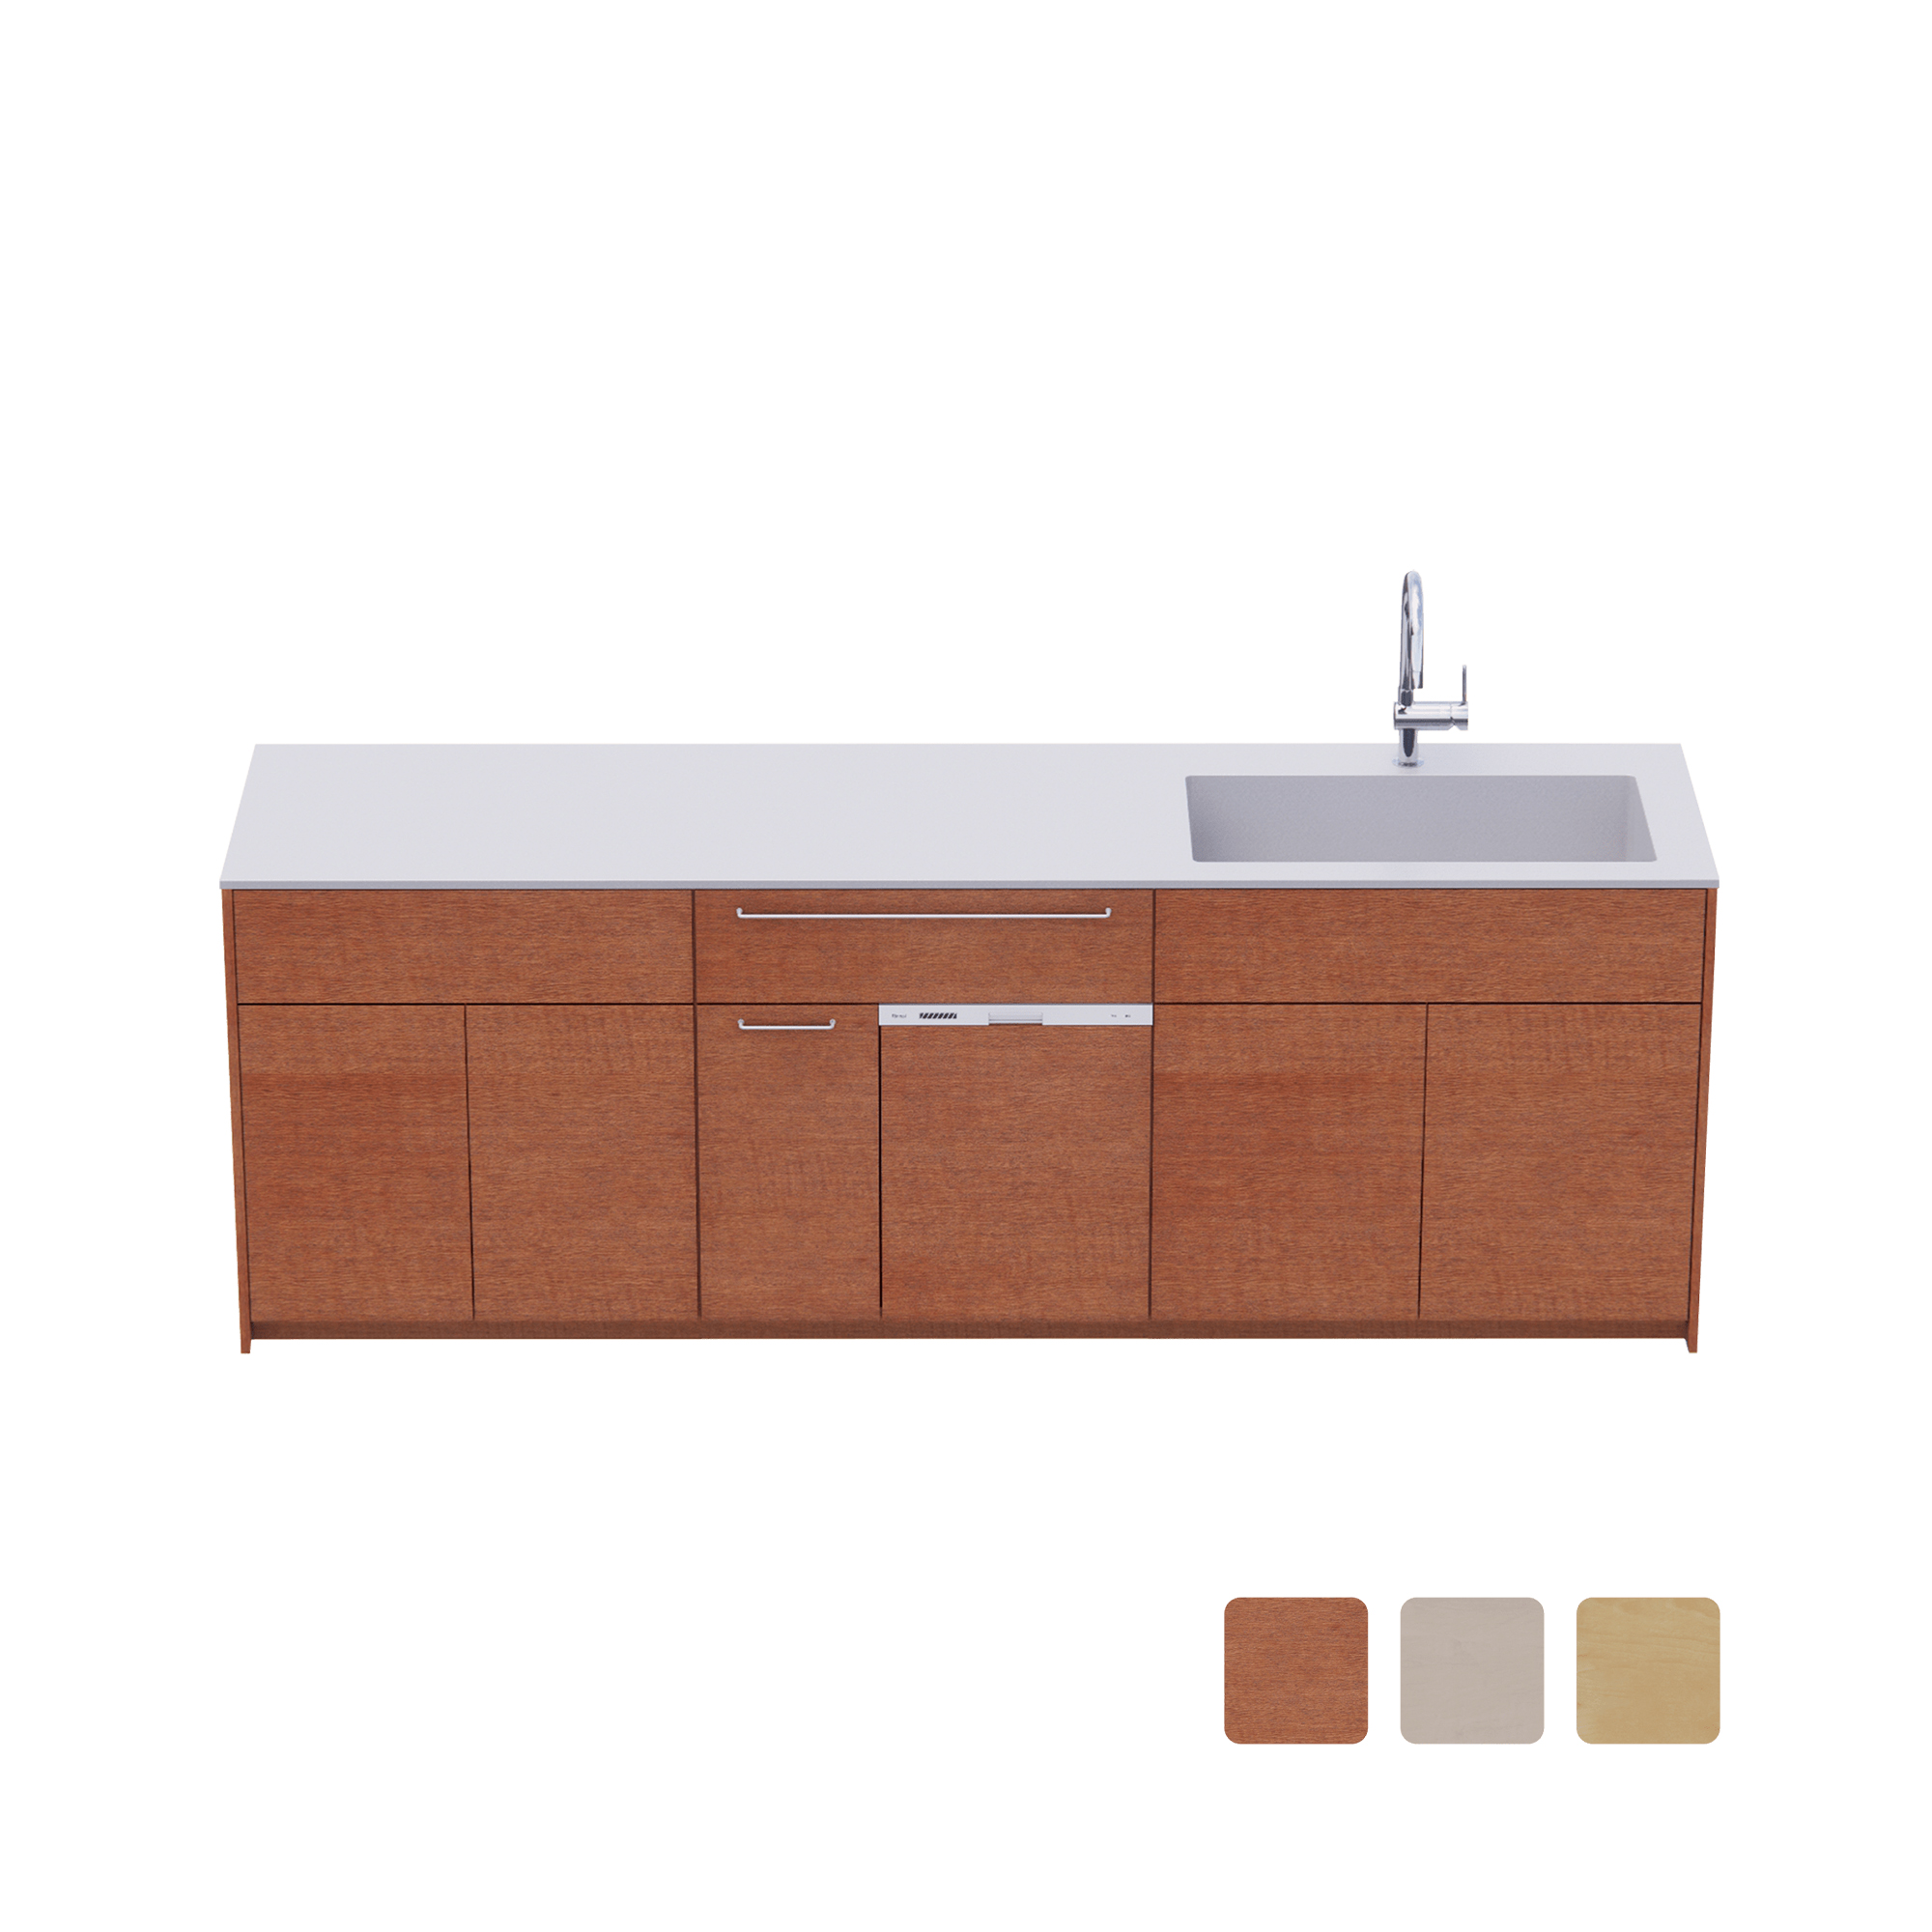 木製システムキッチン 壁付け型 W2440～2740・コンロなし オーブンなし 食洗機あり KB-KC022-27-G183  キッチン本体 キッチン toolbox